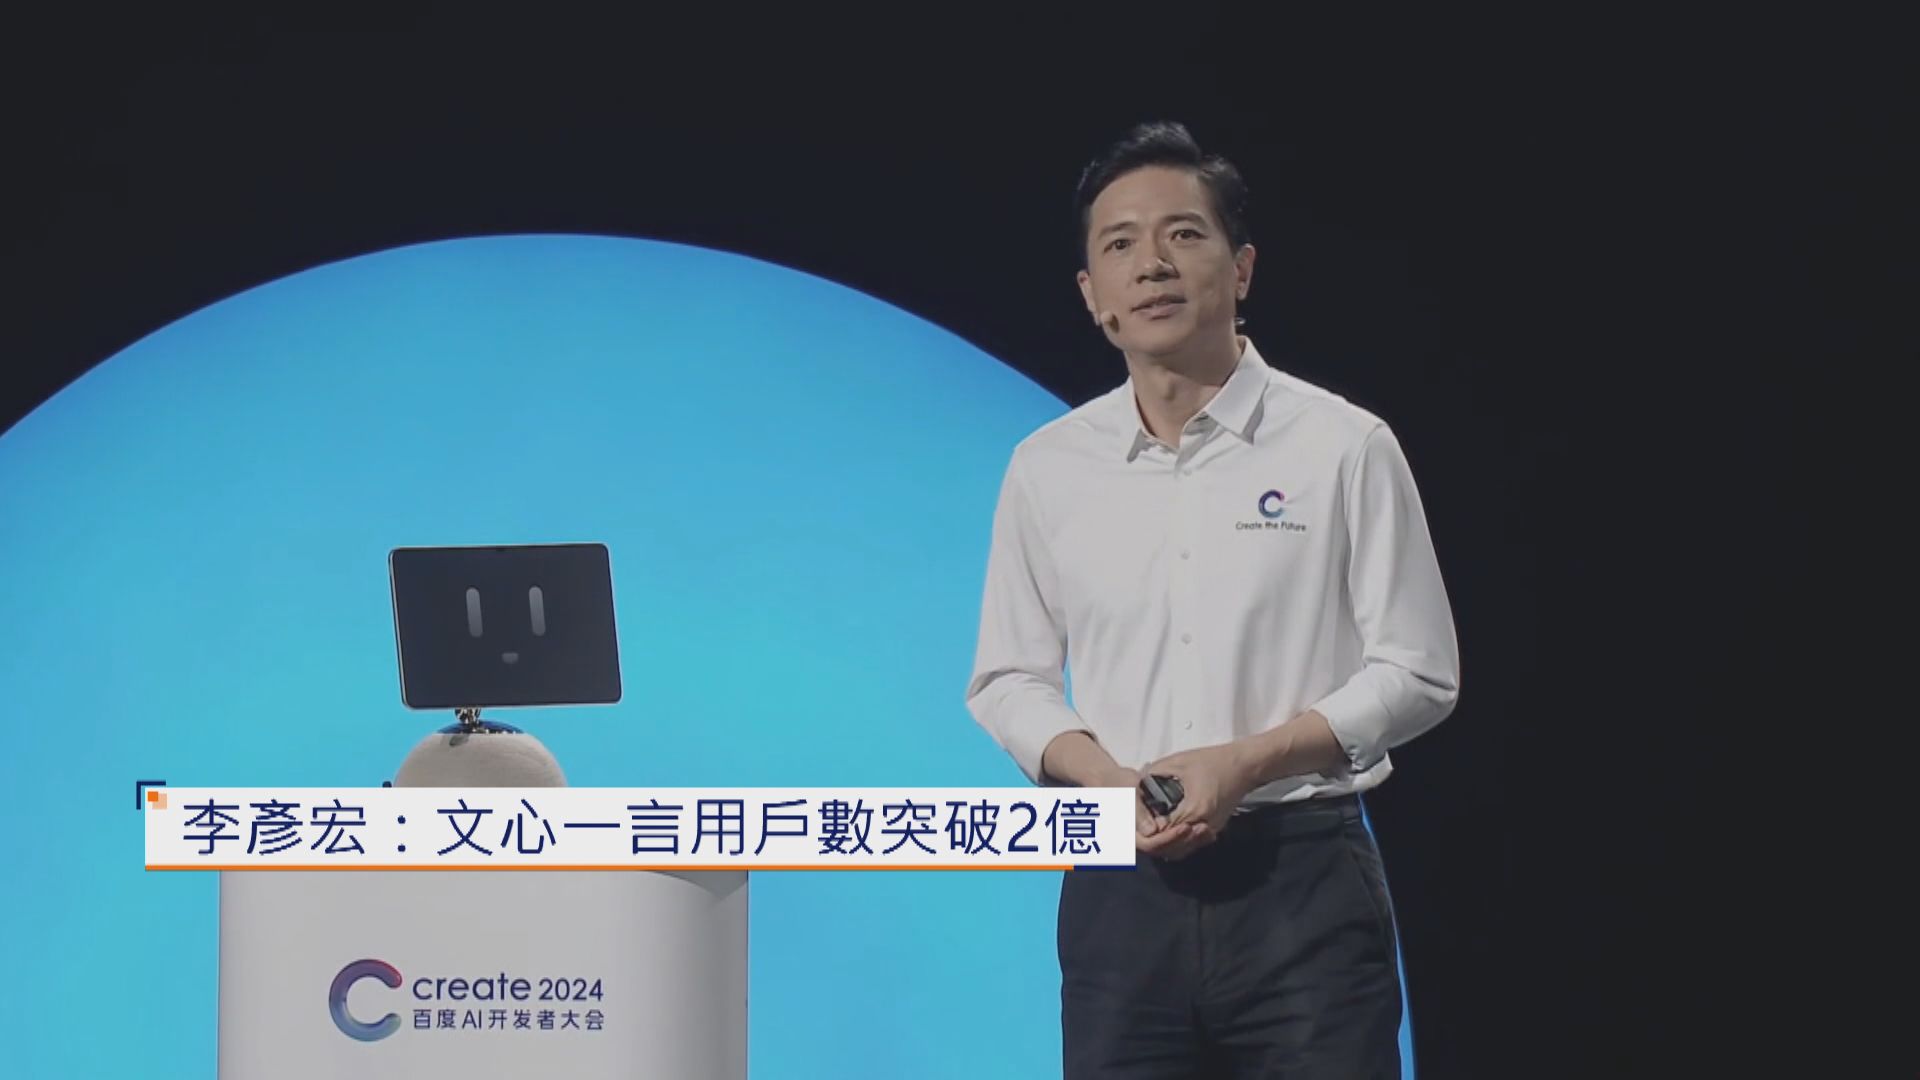 【AI開發者大會】李彥宏:文心一言用戶數破2億